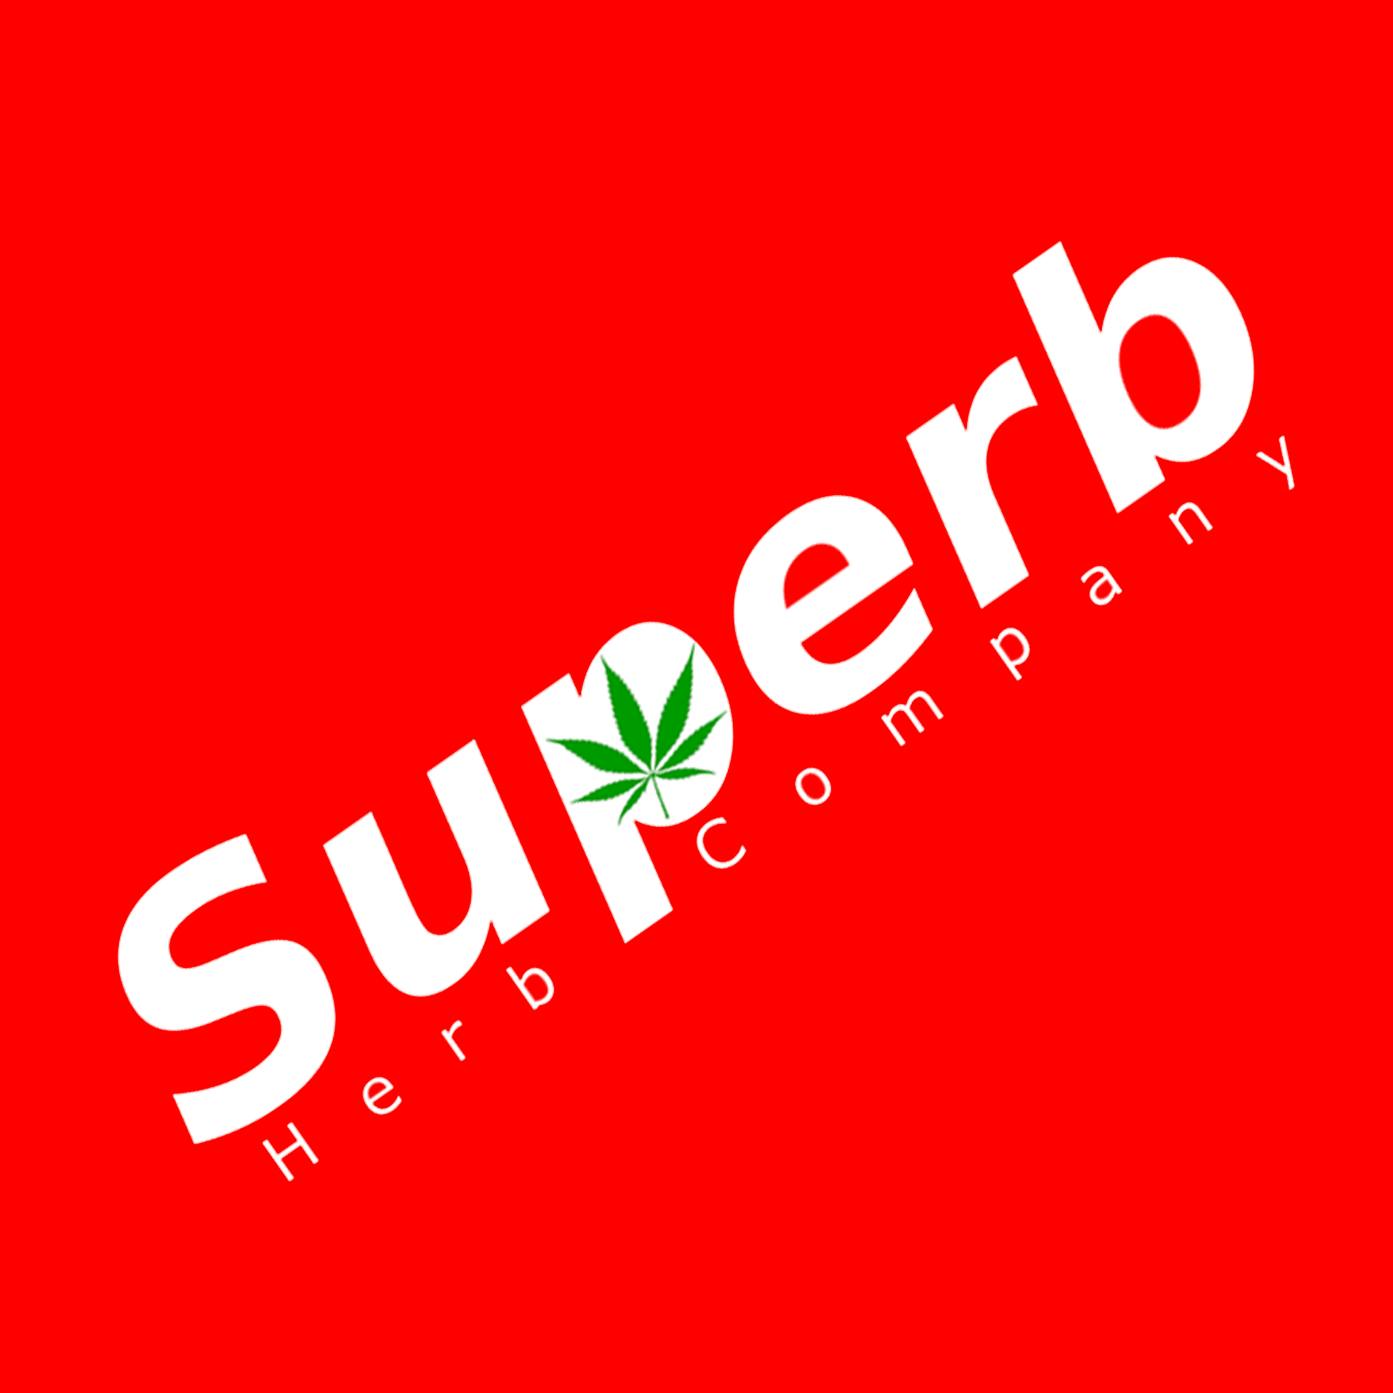 Superb Herb Company logo